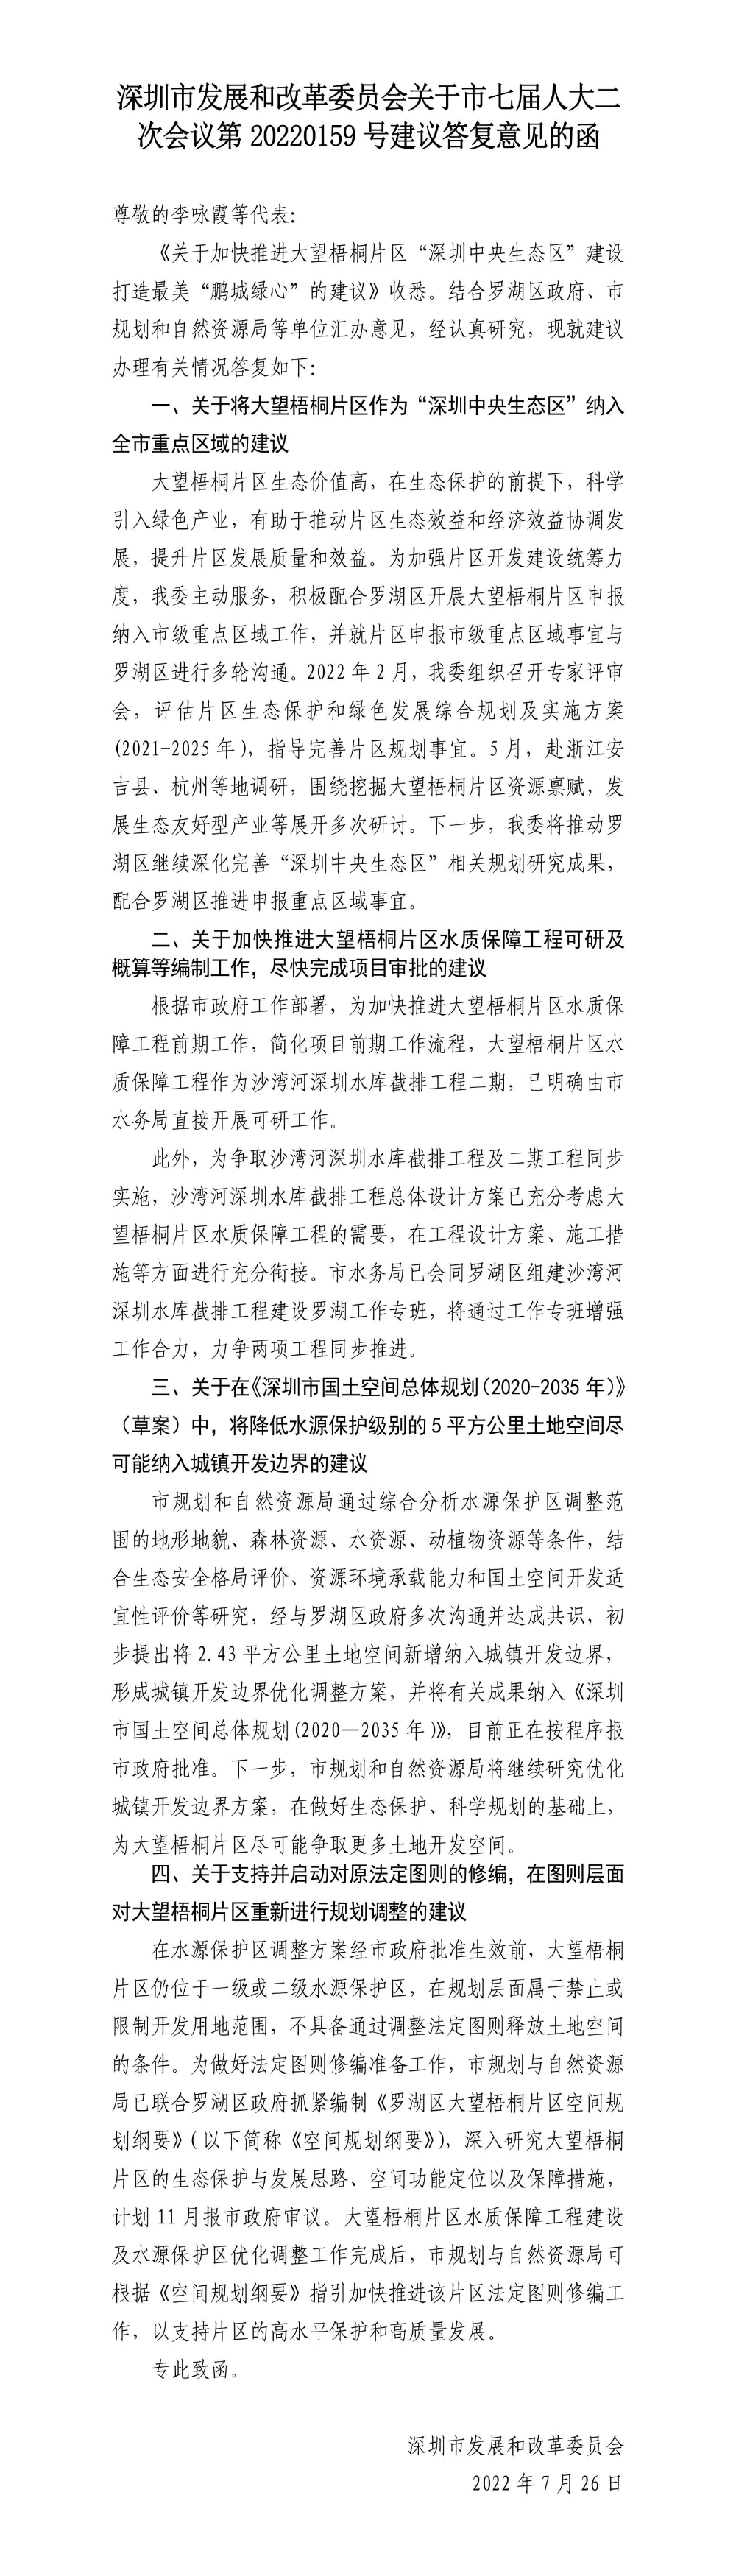 深圳市发展和改革委员会关于市七届人大二次会议第20220159号建议答复意见的函.jpg